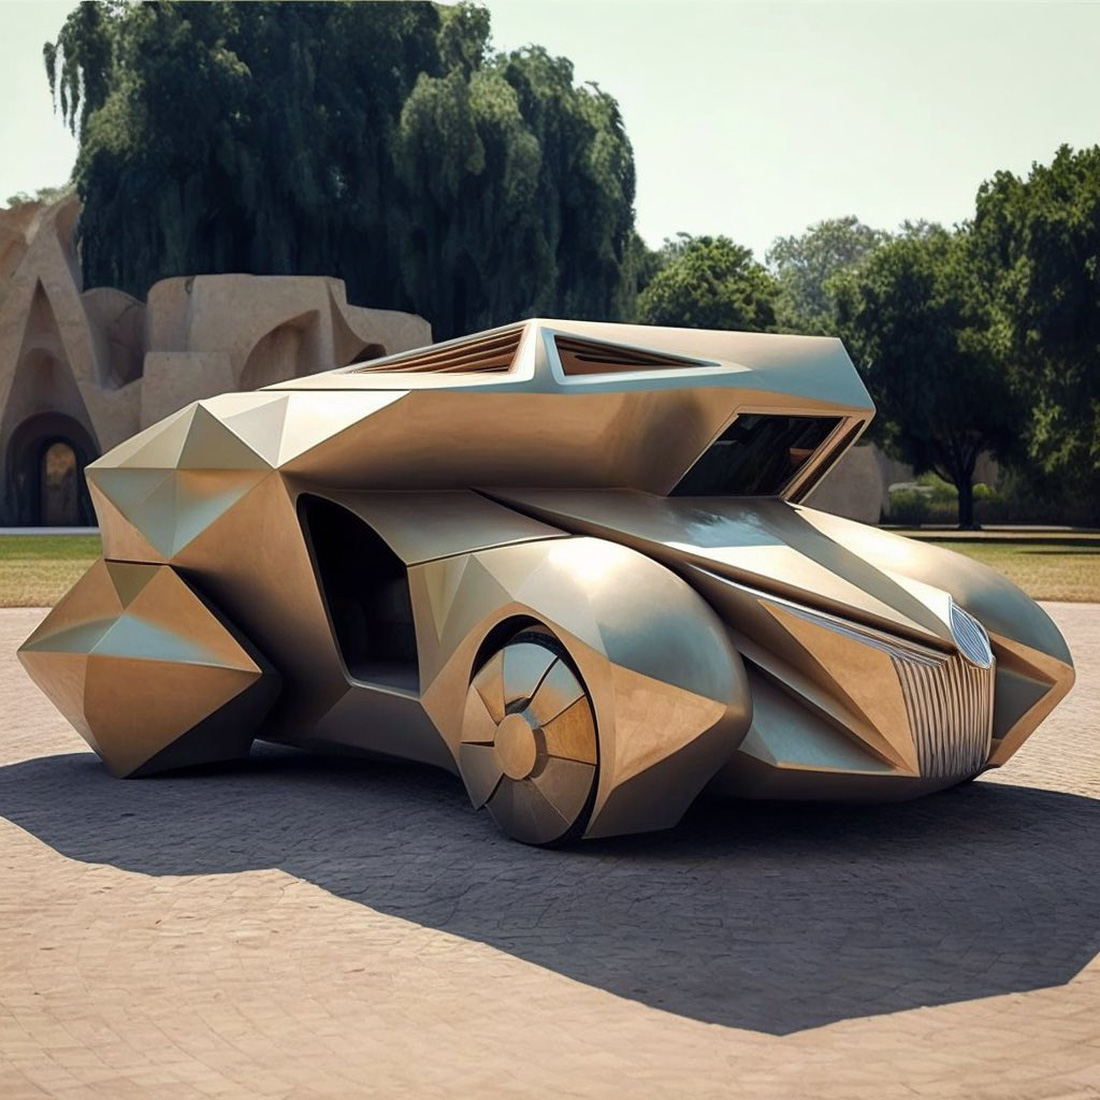 Chùm ảnh trí tuệ nhân tạo thiết kế ô tô mô phỏng các công trình kiến trúc độc đáo - Ảnh 3.